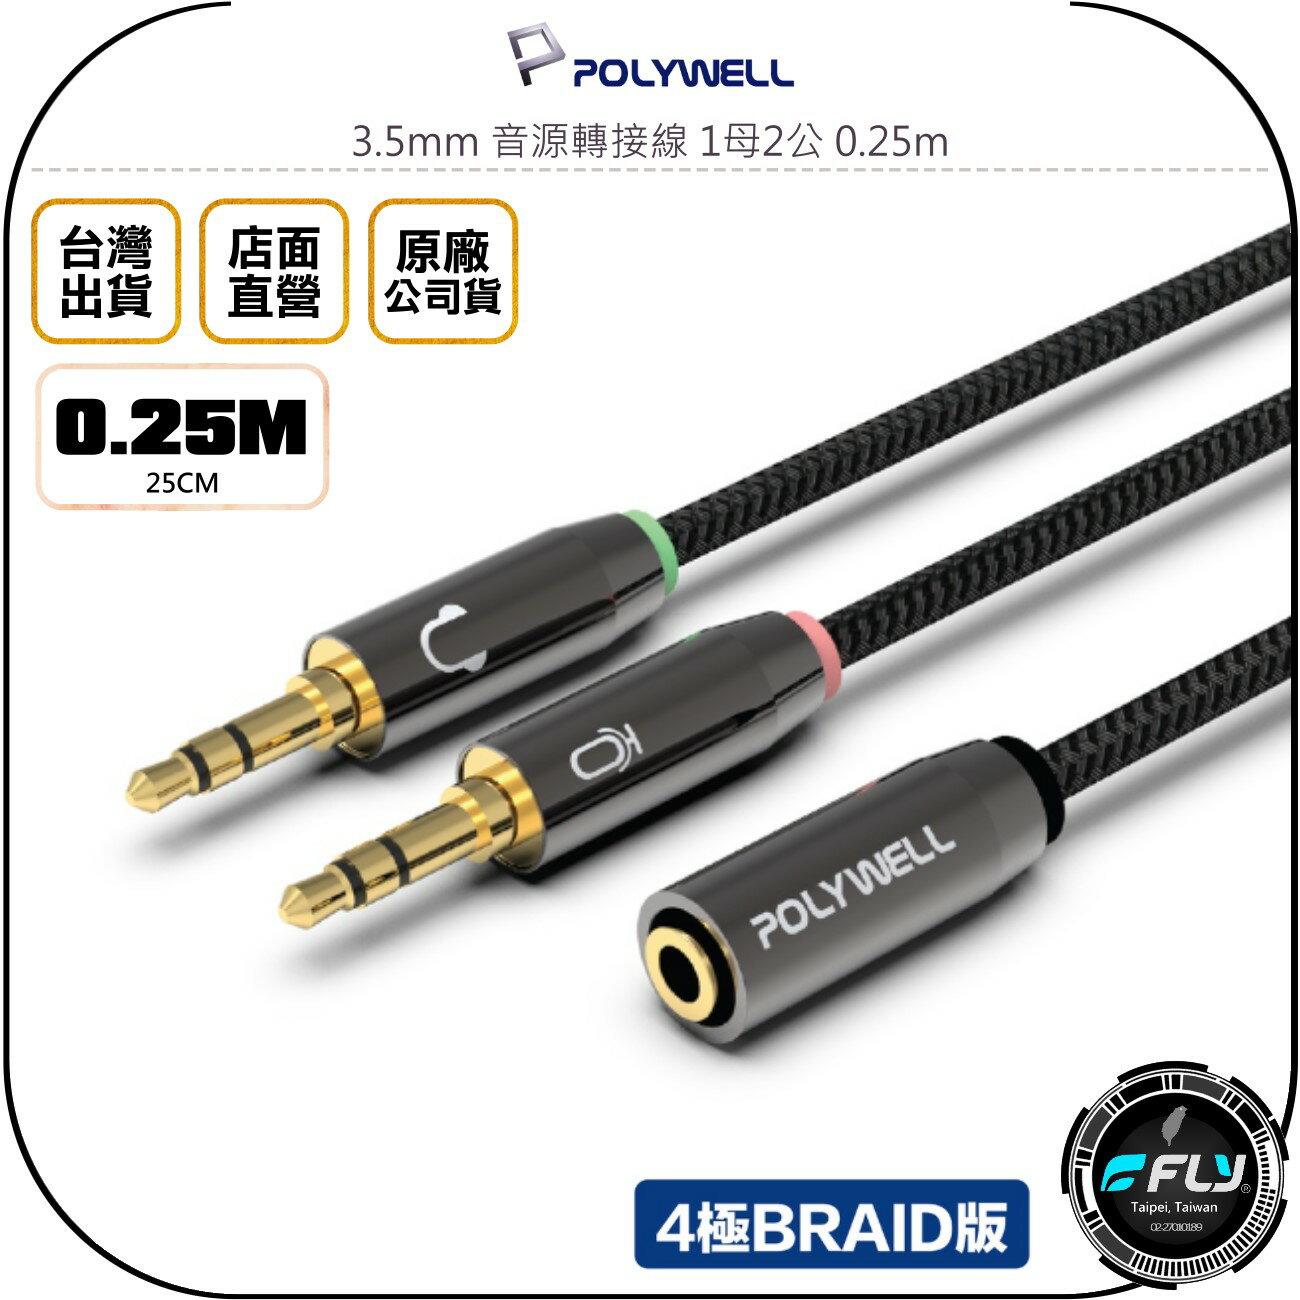 《飛翔無線3C》POLYWELL 寶利威爾 3.5mm 音源轉接線 1母2公 0.25m◉公司貨◉分接線◉Y-Cable